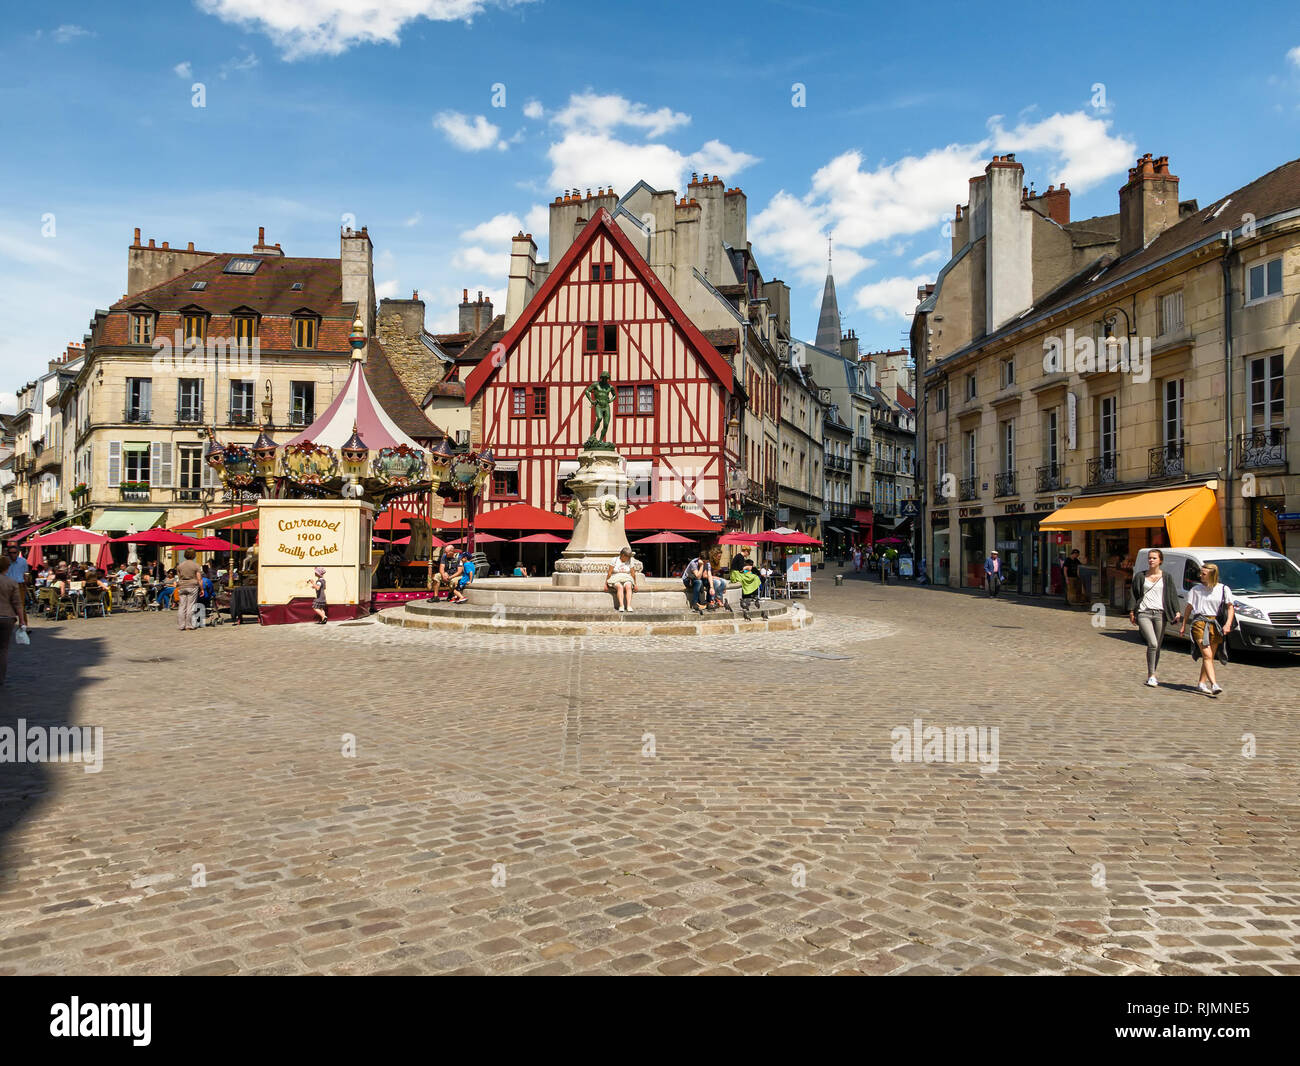 La Place François Rude, Dijon, Bourgogne, France montrant la fontaine et le joli café. Aussi un anglais merry go round ou carrousel sur la place. Banque D'Images